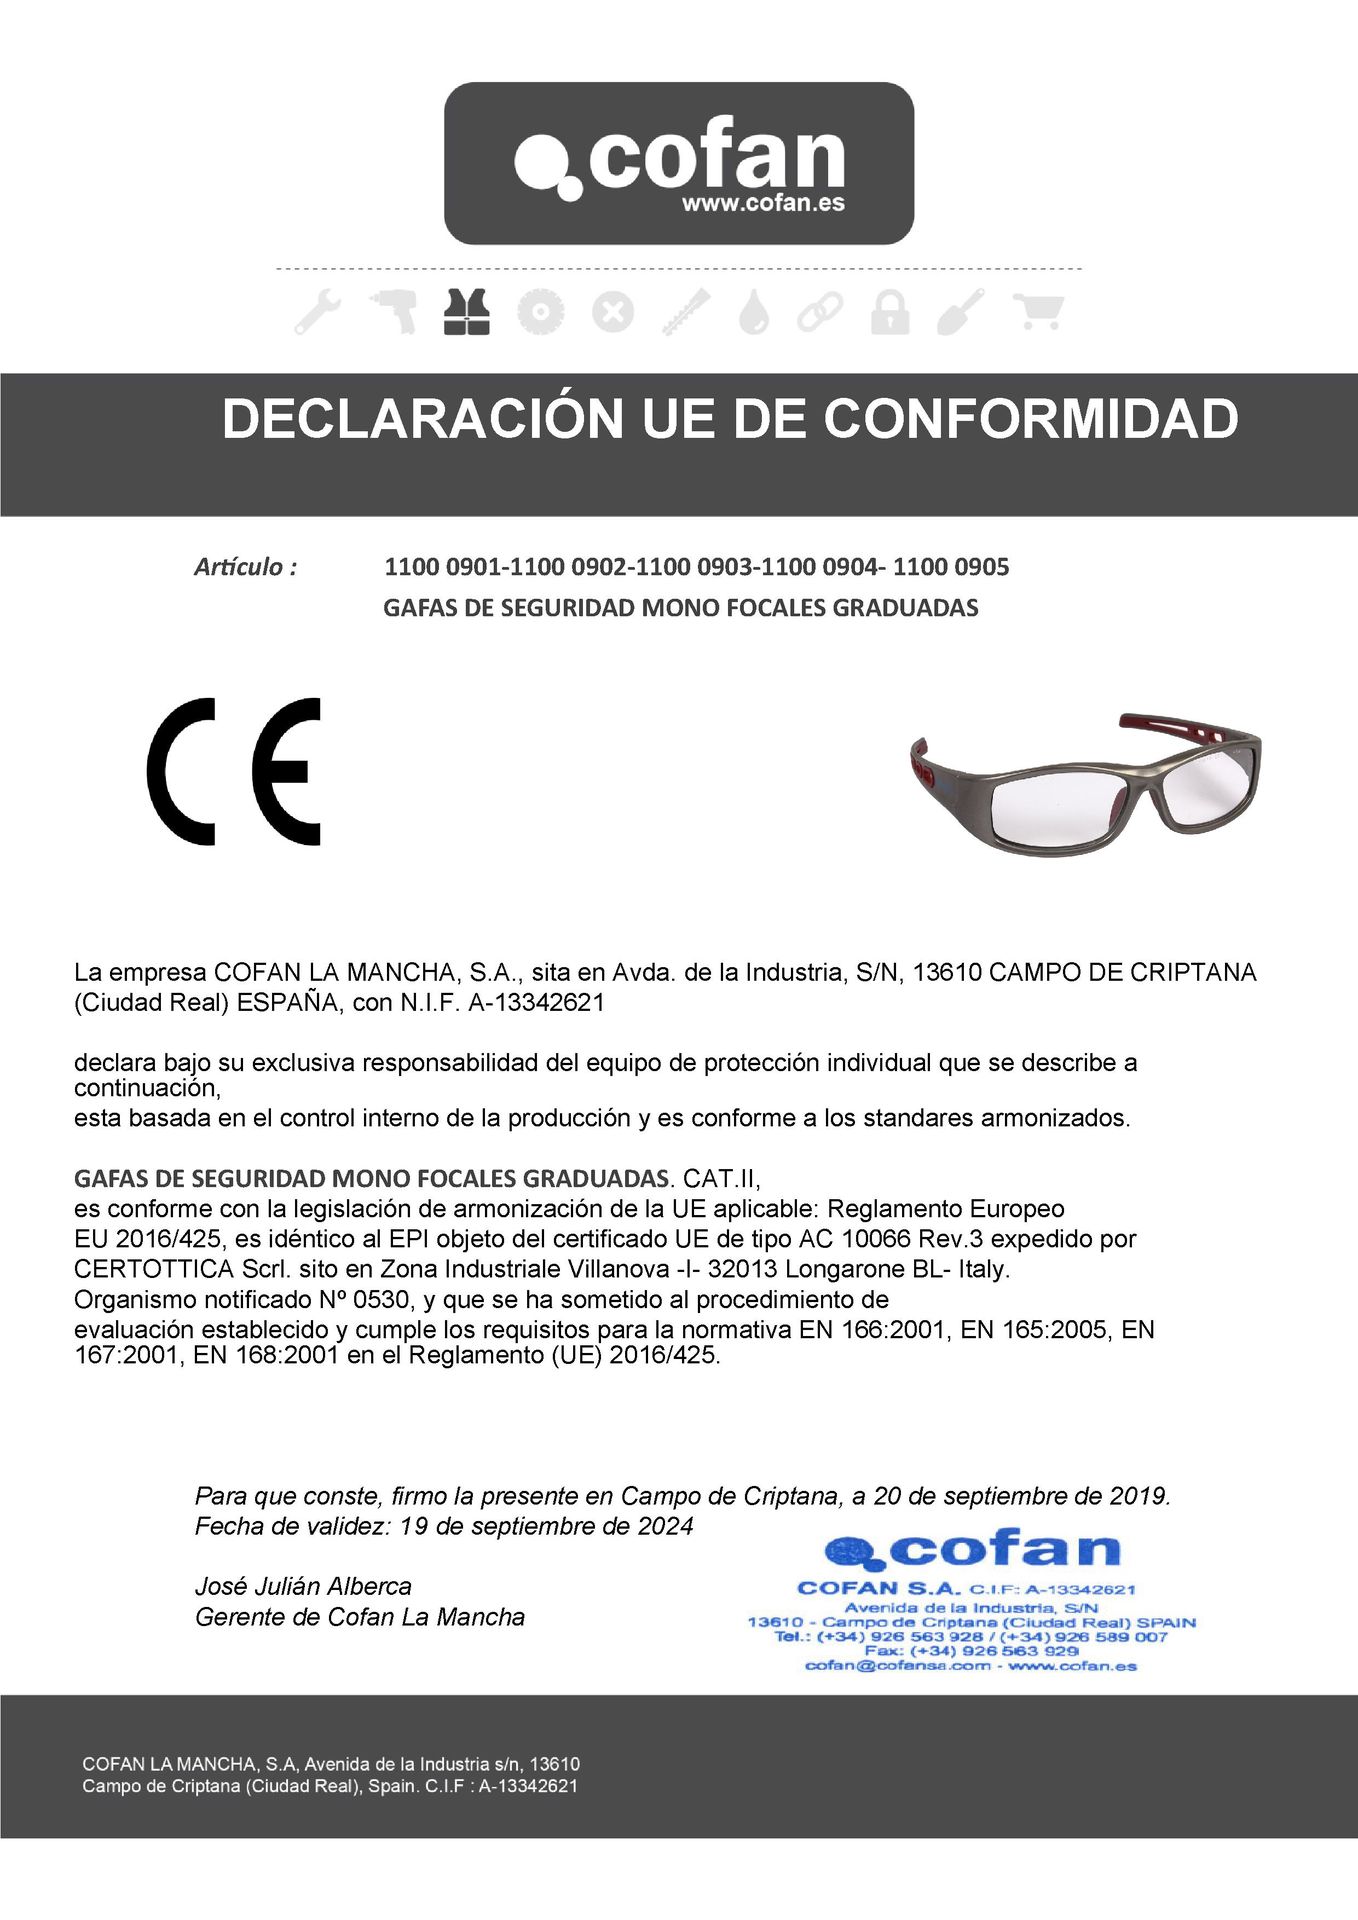 Declaración de Conformidad de Gafas de Seguridad Graduadas